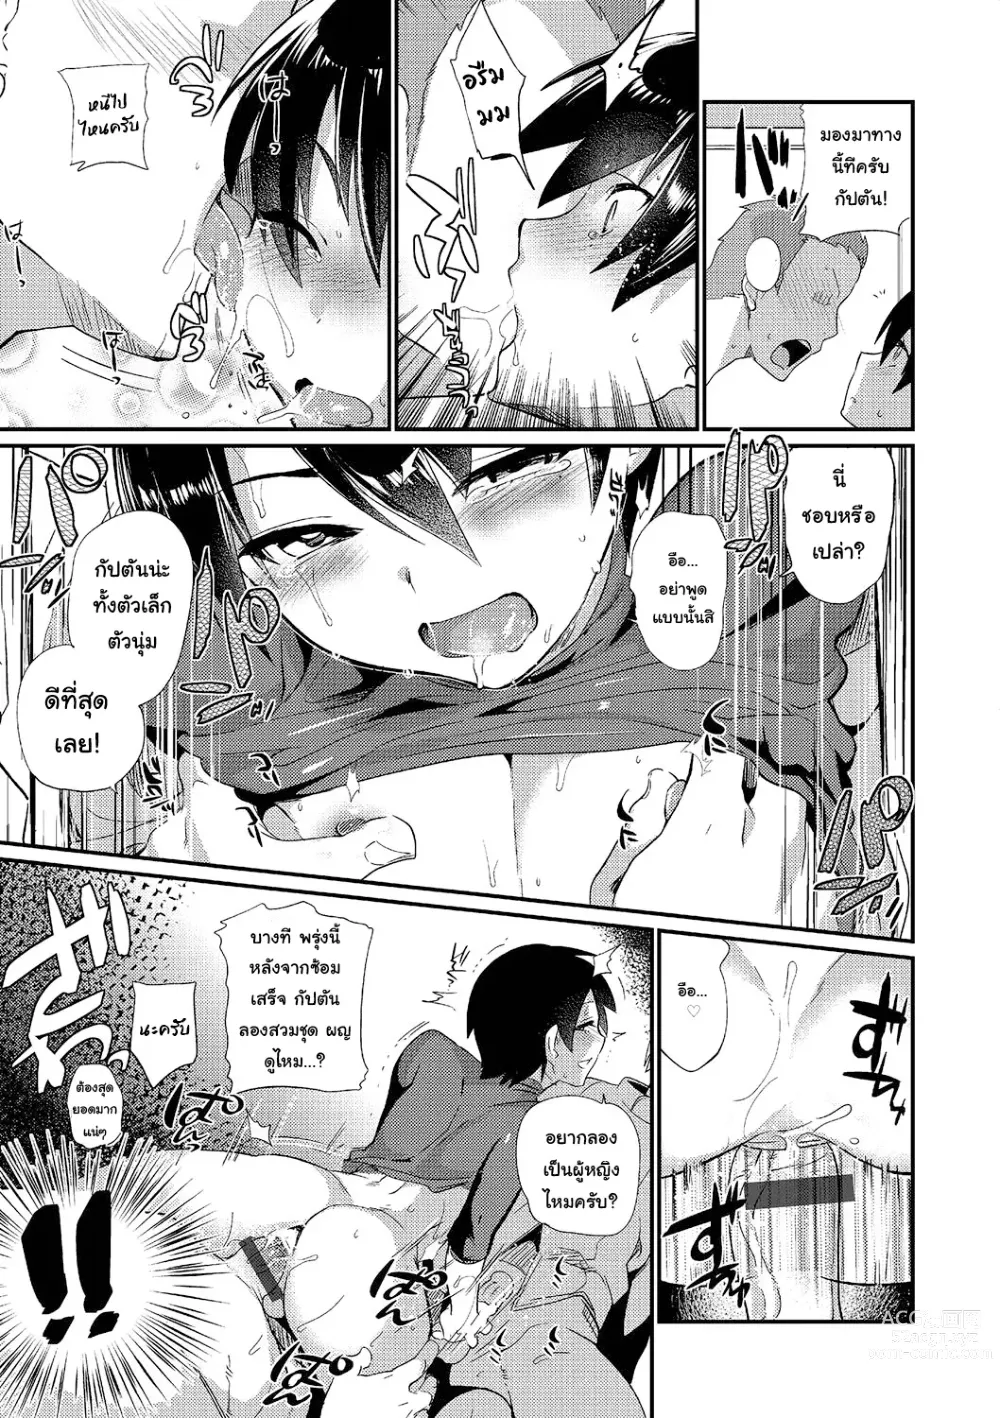 Page 5 of manga Danketsu no Hiketsu